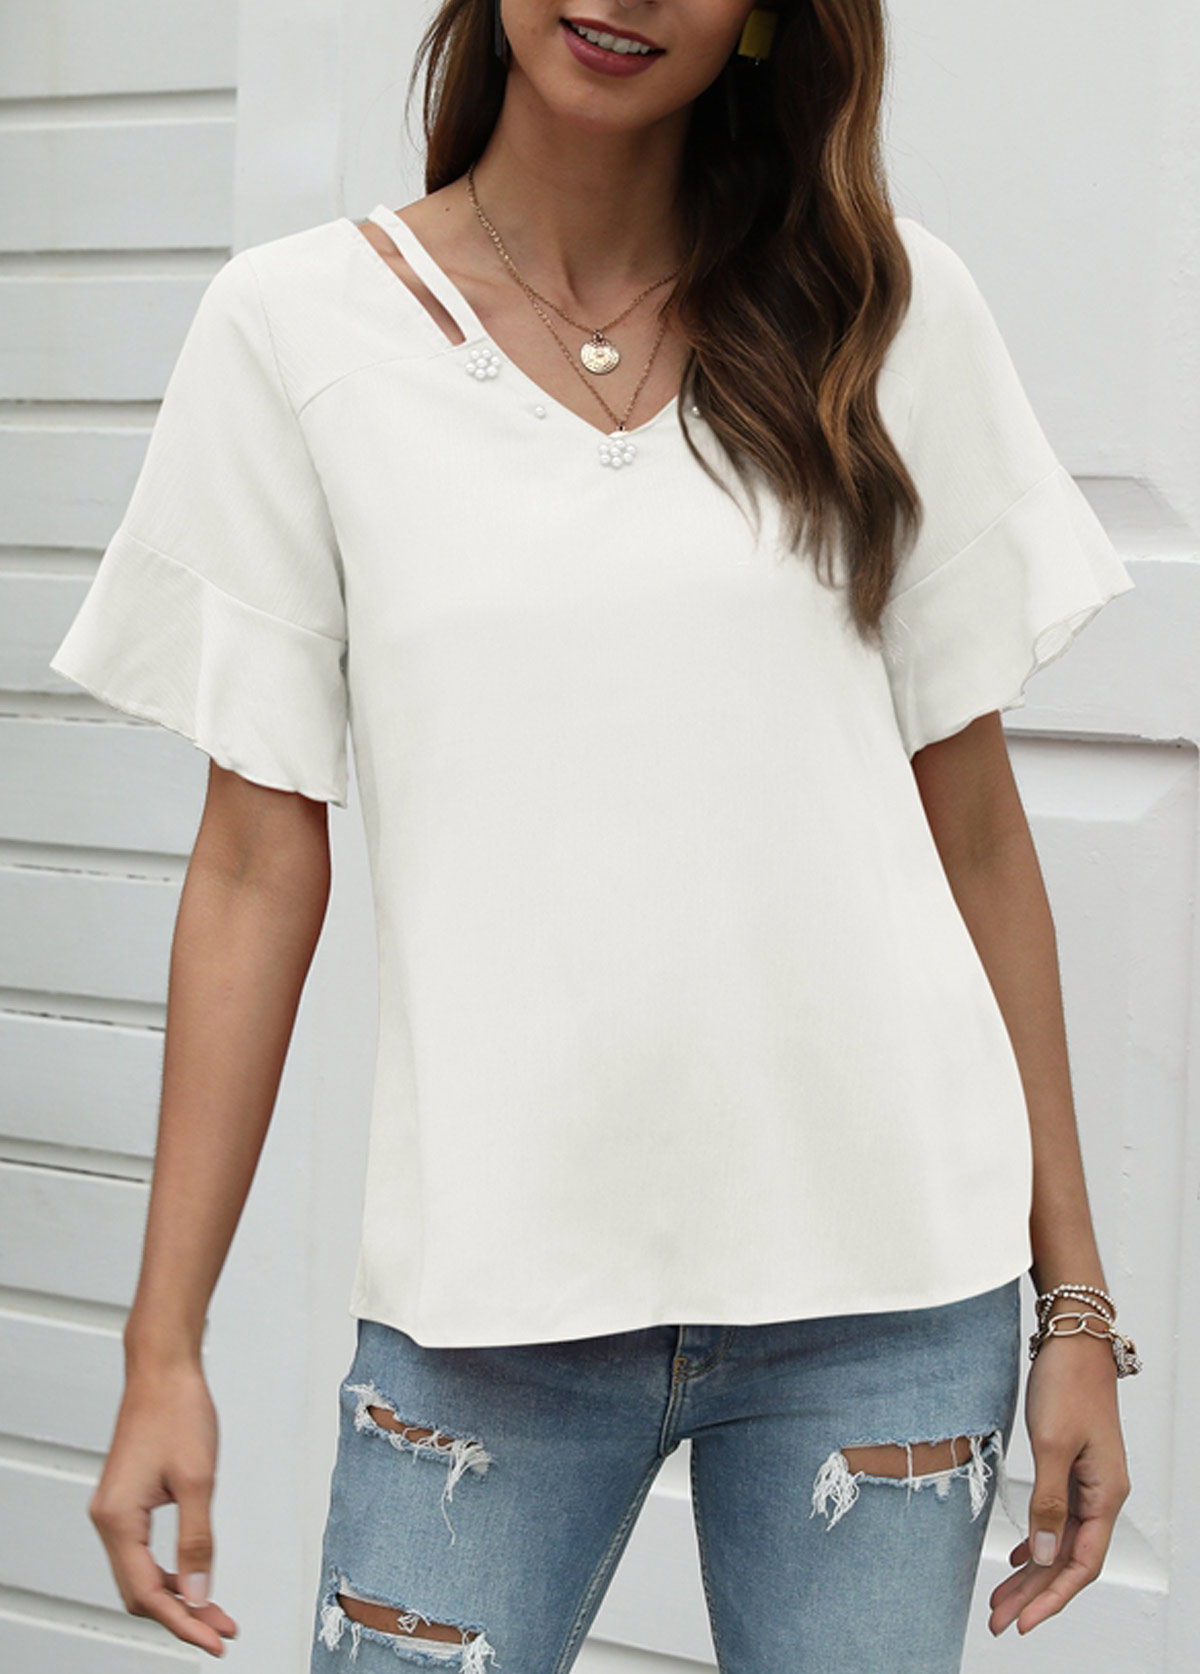 Cutout White Pearl Design T Shirt